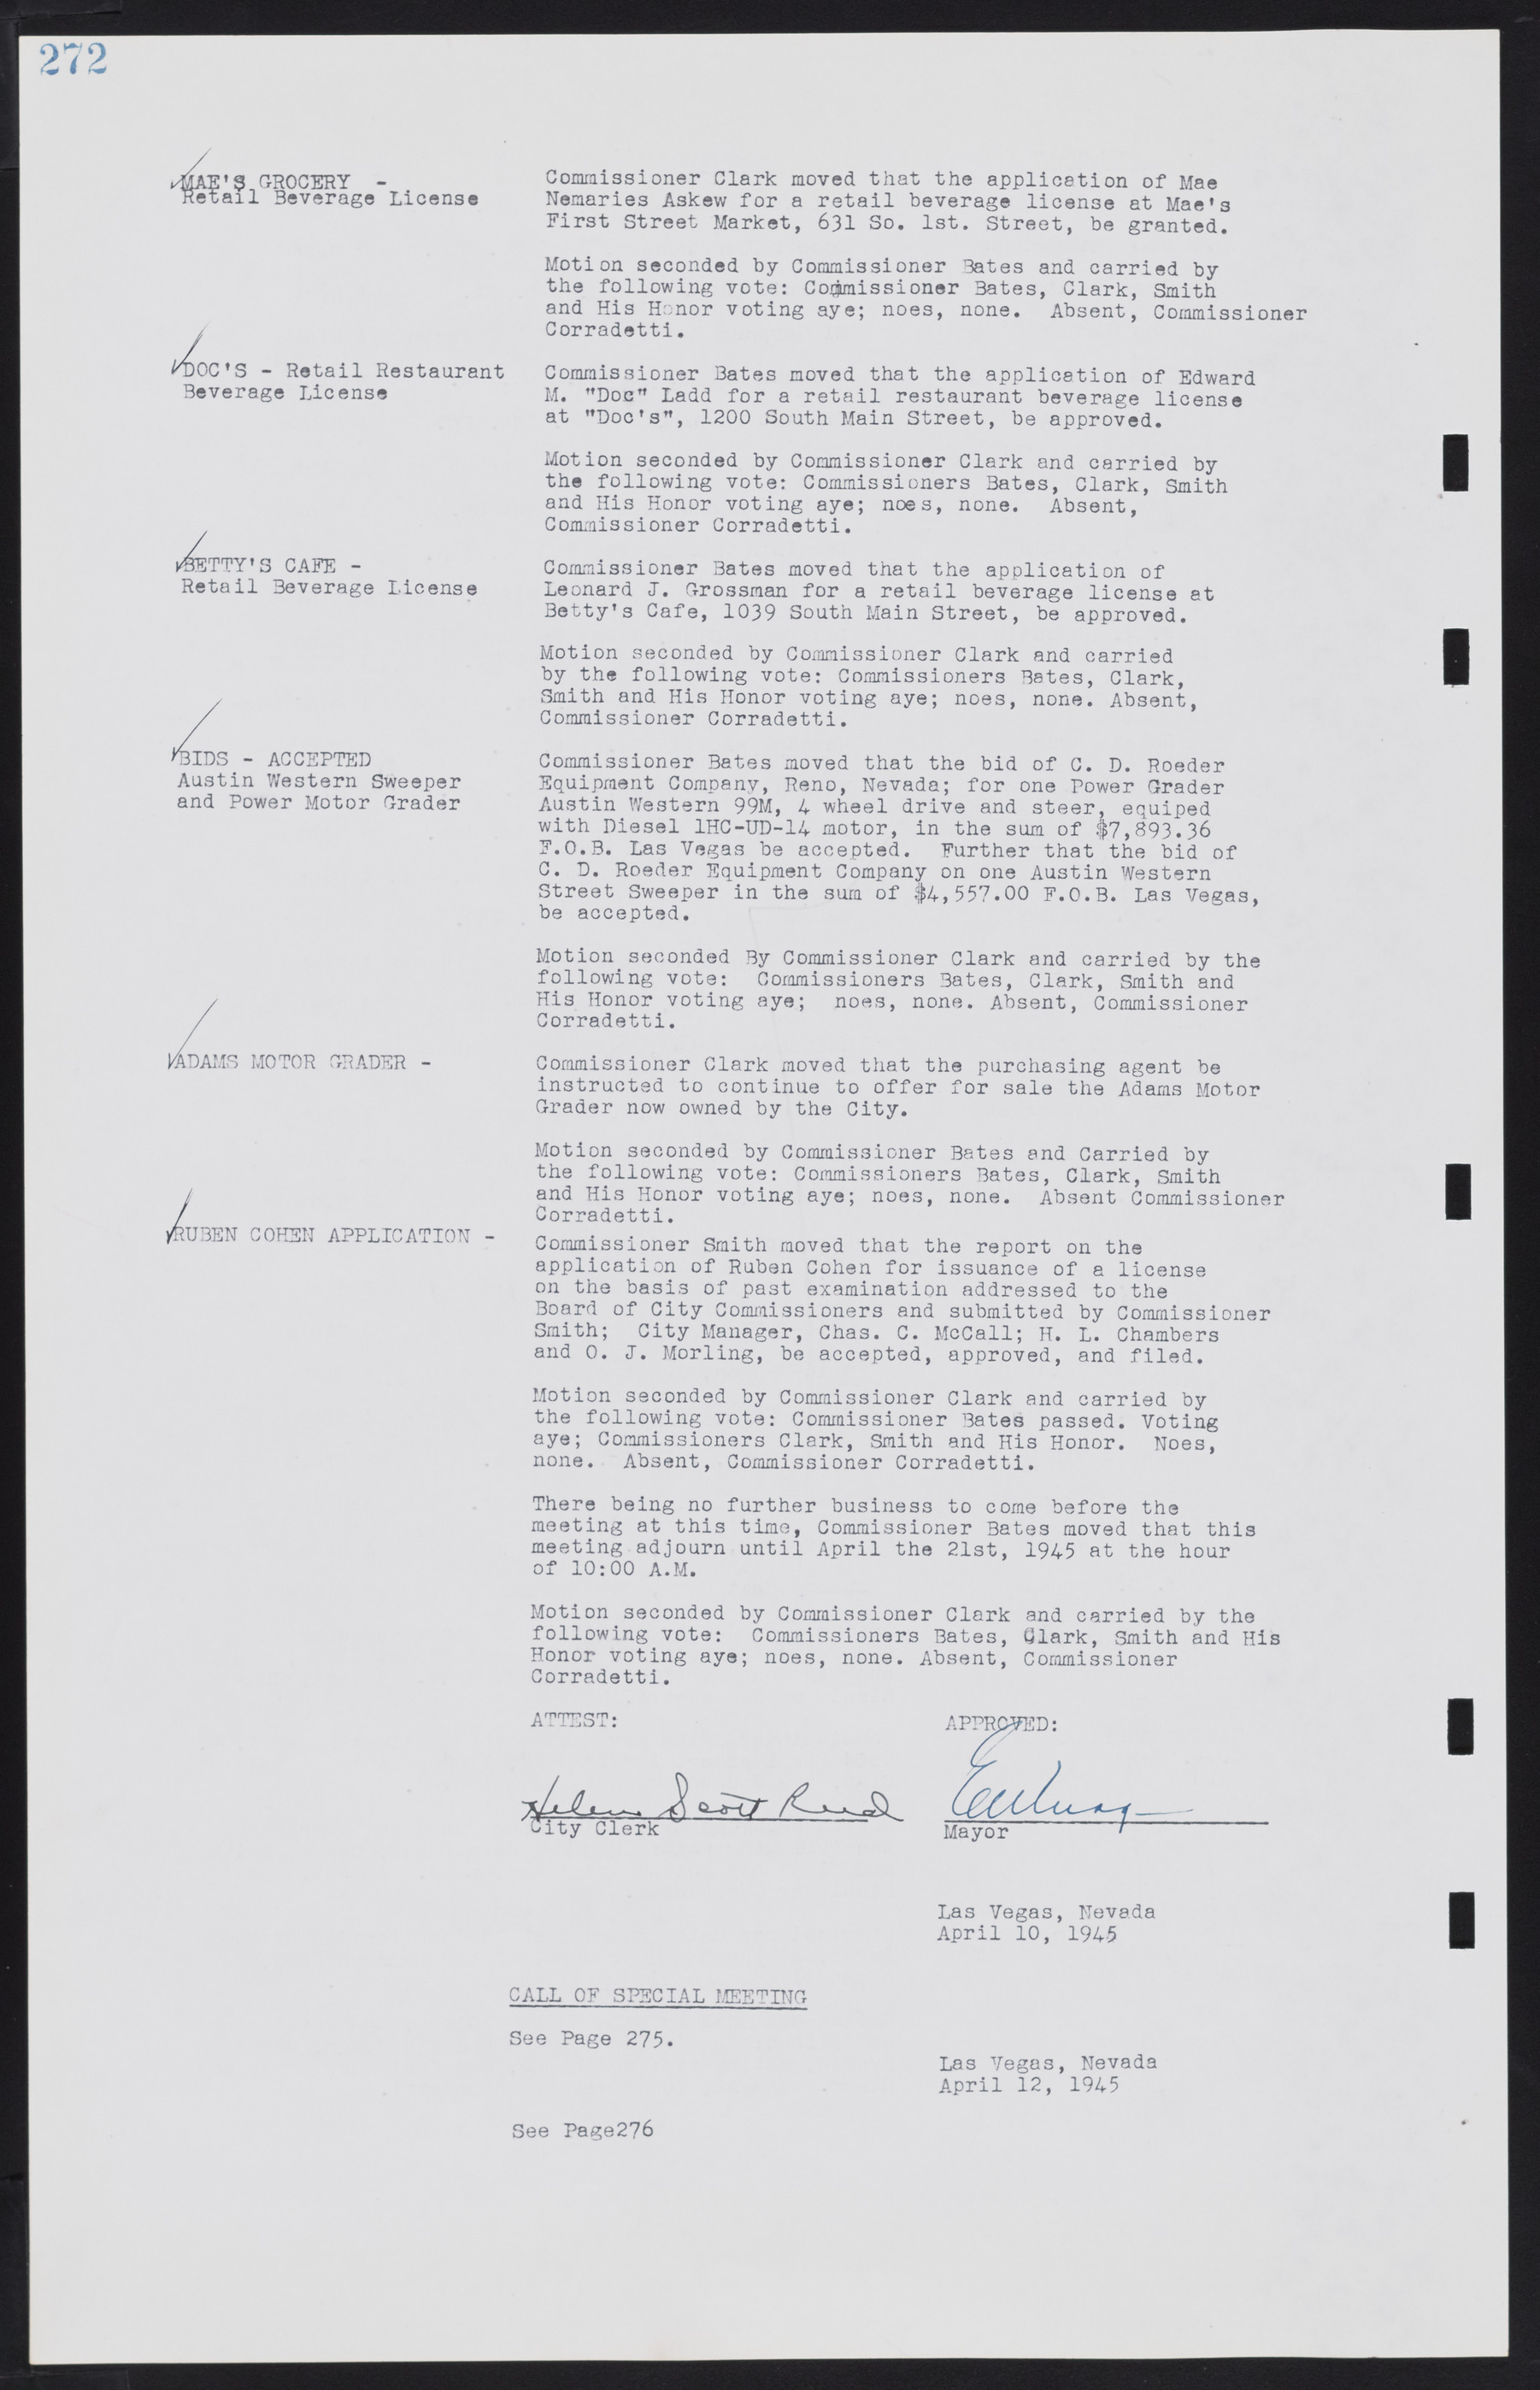 Las Vegas City Commission Minutes, August 11, 1942 to December 30, 1946, lvc000005-294